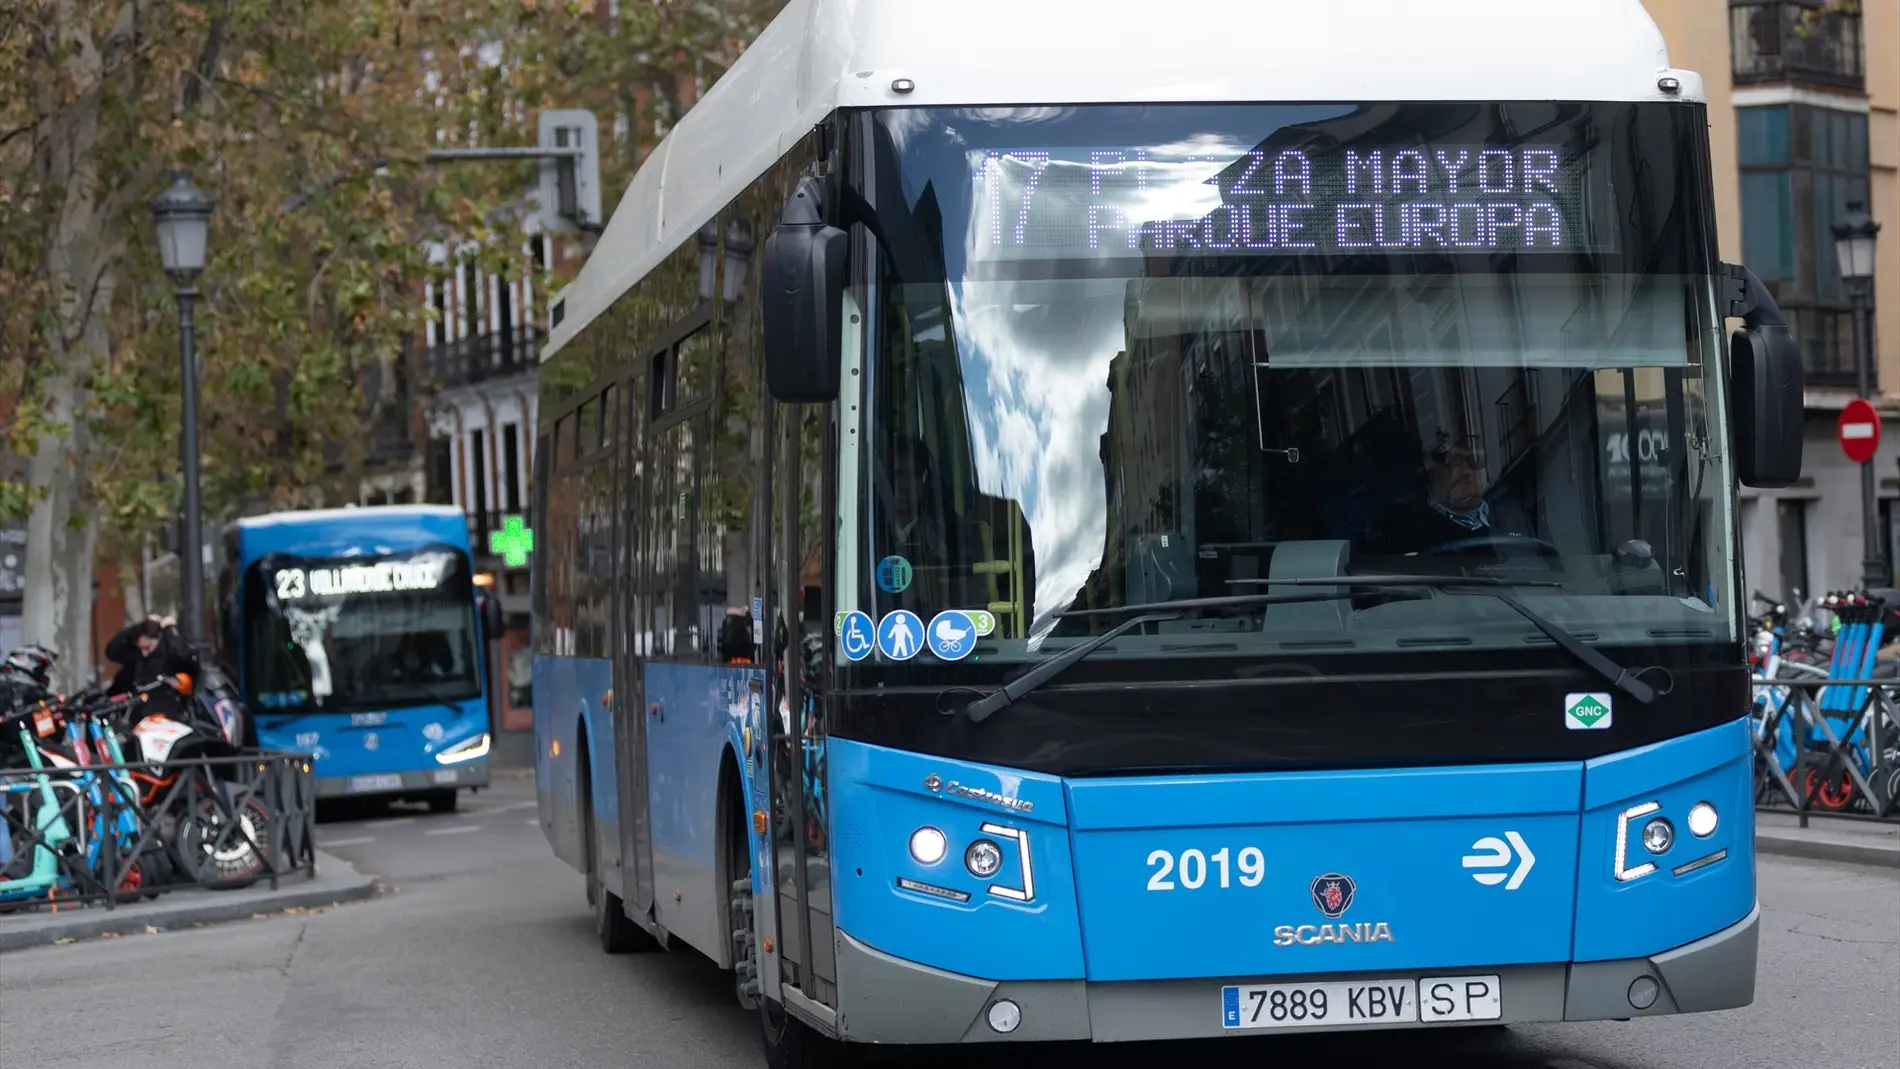 Los autobuses de la EMT volverán a ser gratuitos en Madrid el primer lunes tras el puente de la Constitución